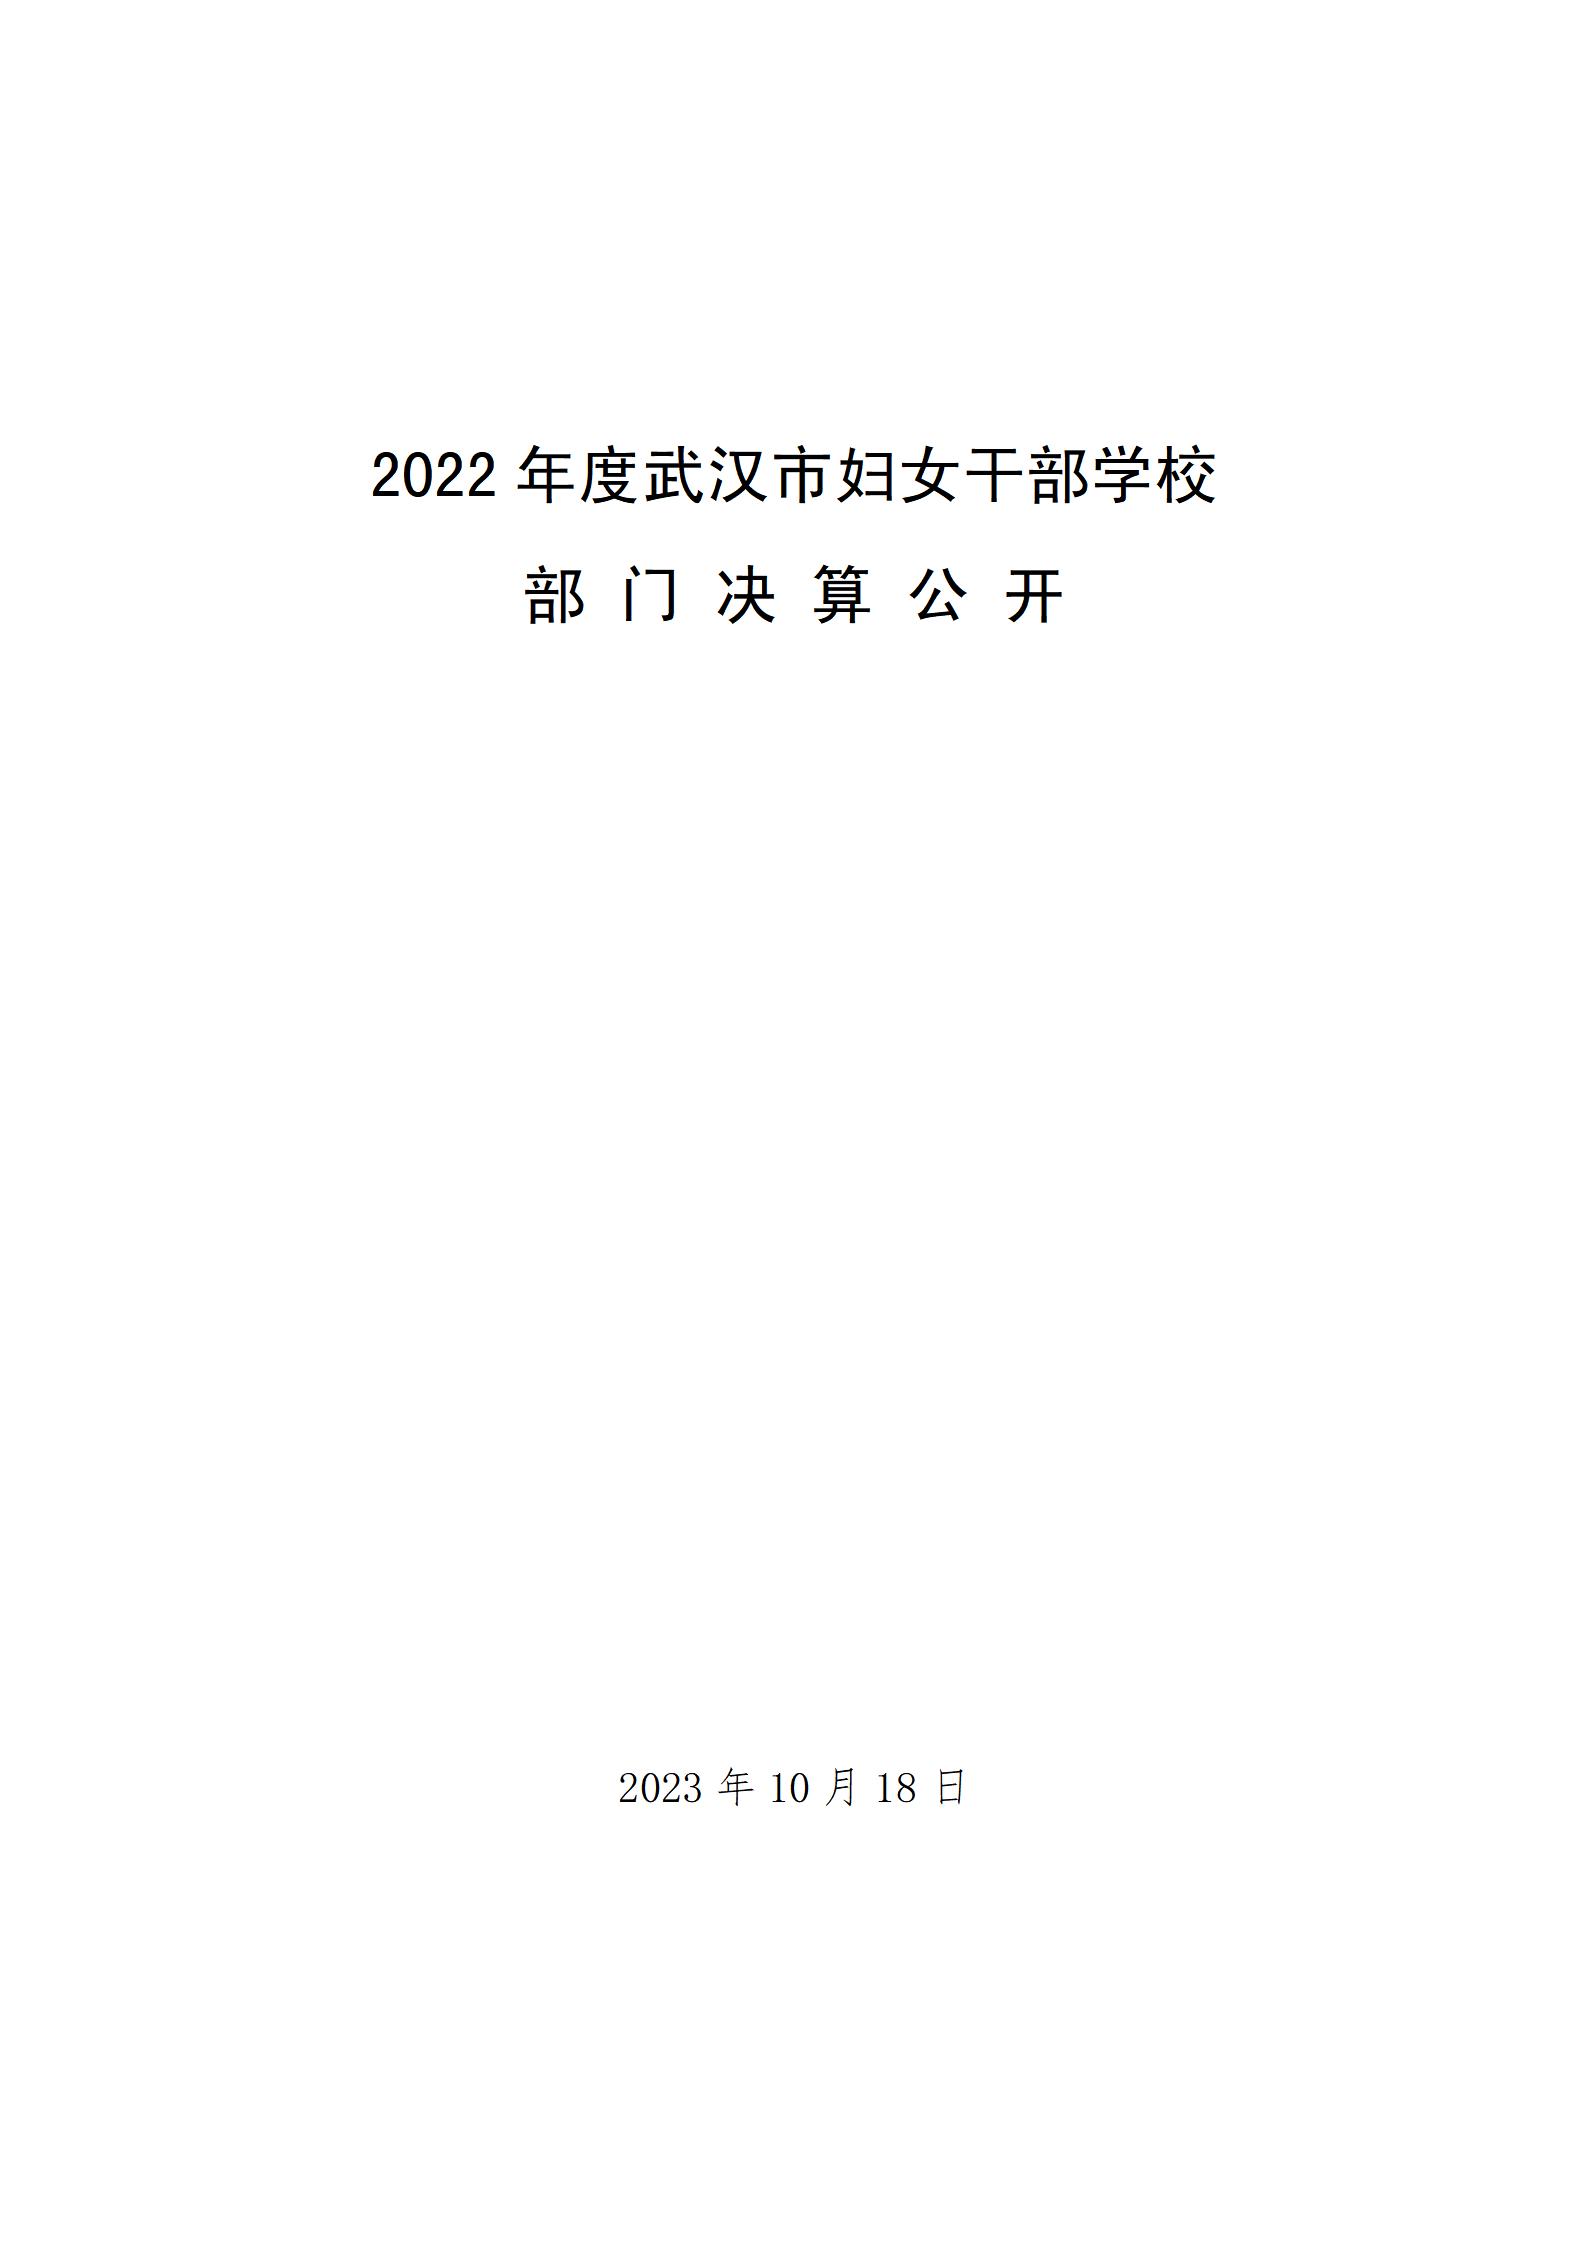 雷竞技投注下载
2022年决算公开报告（9999）_01.jpg